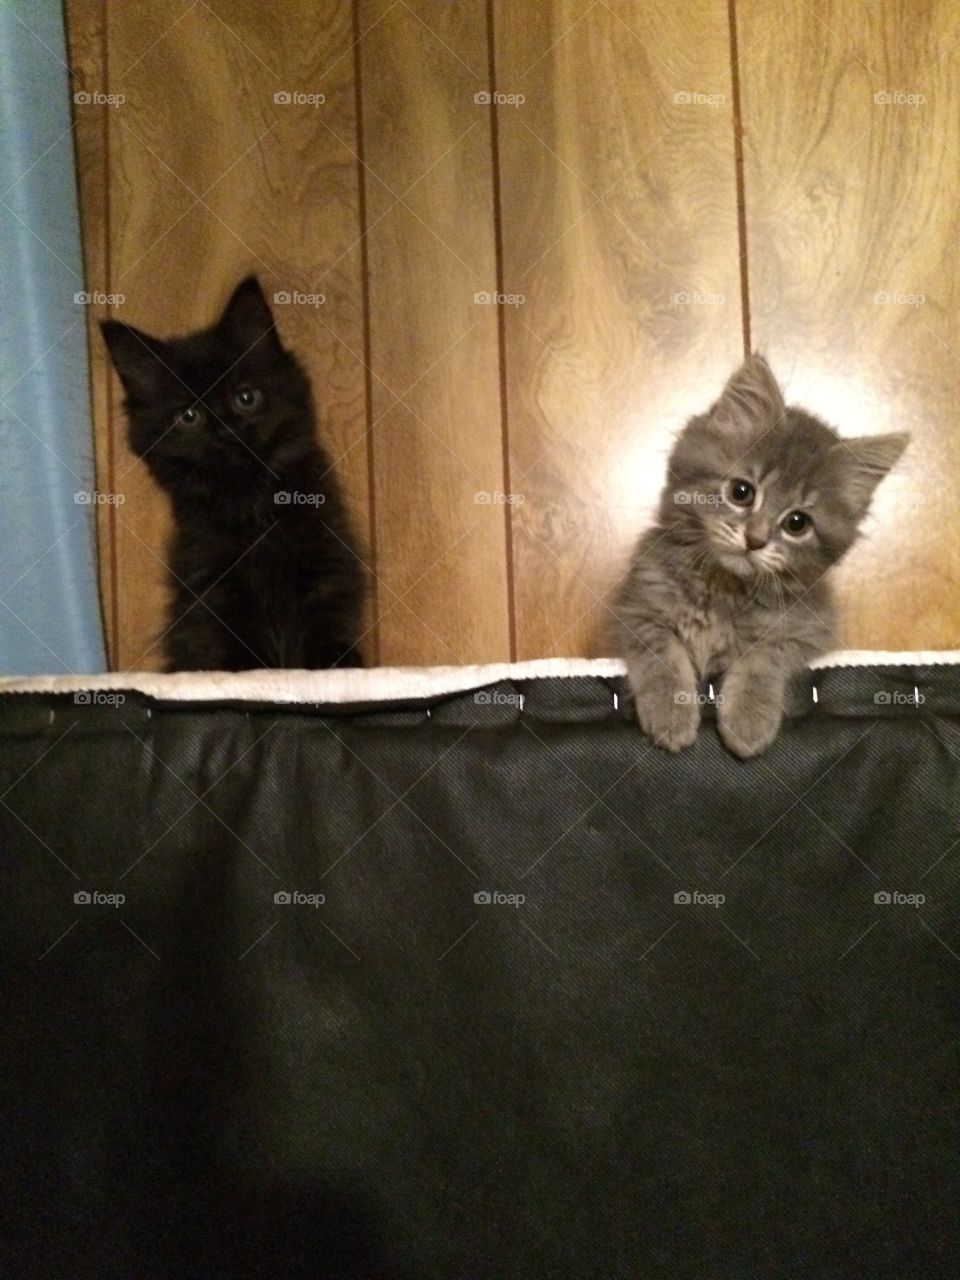 Kittens!
